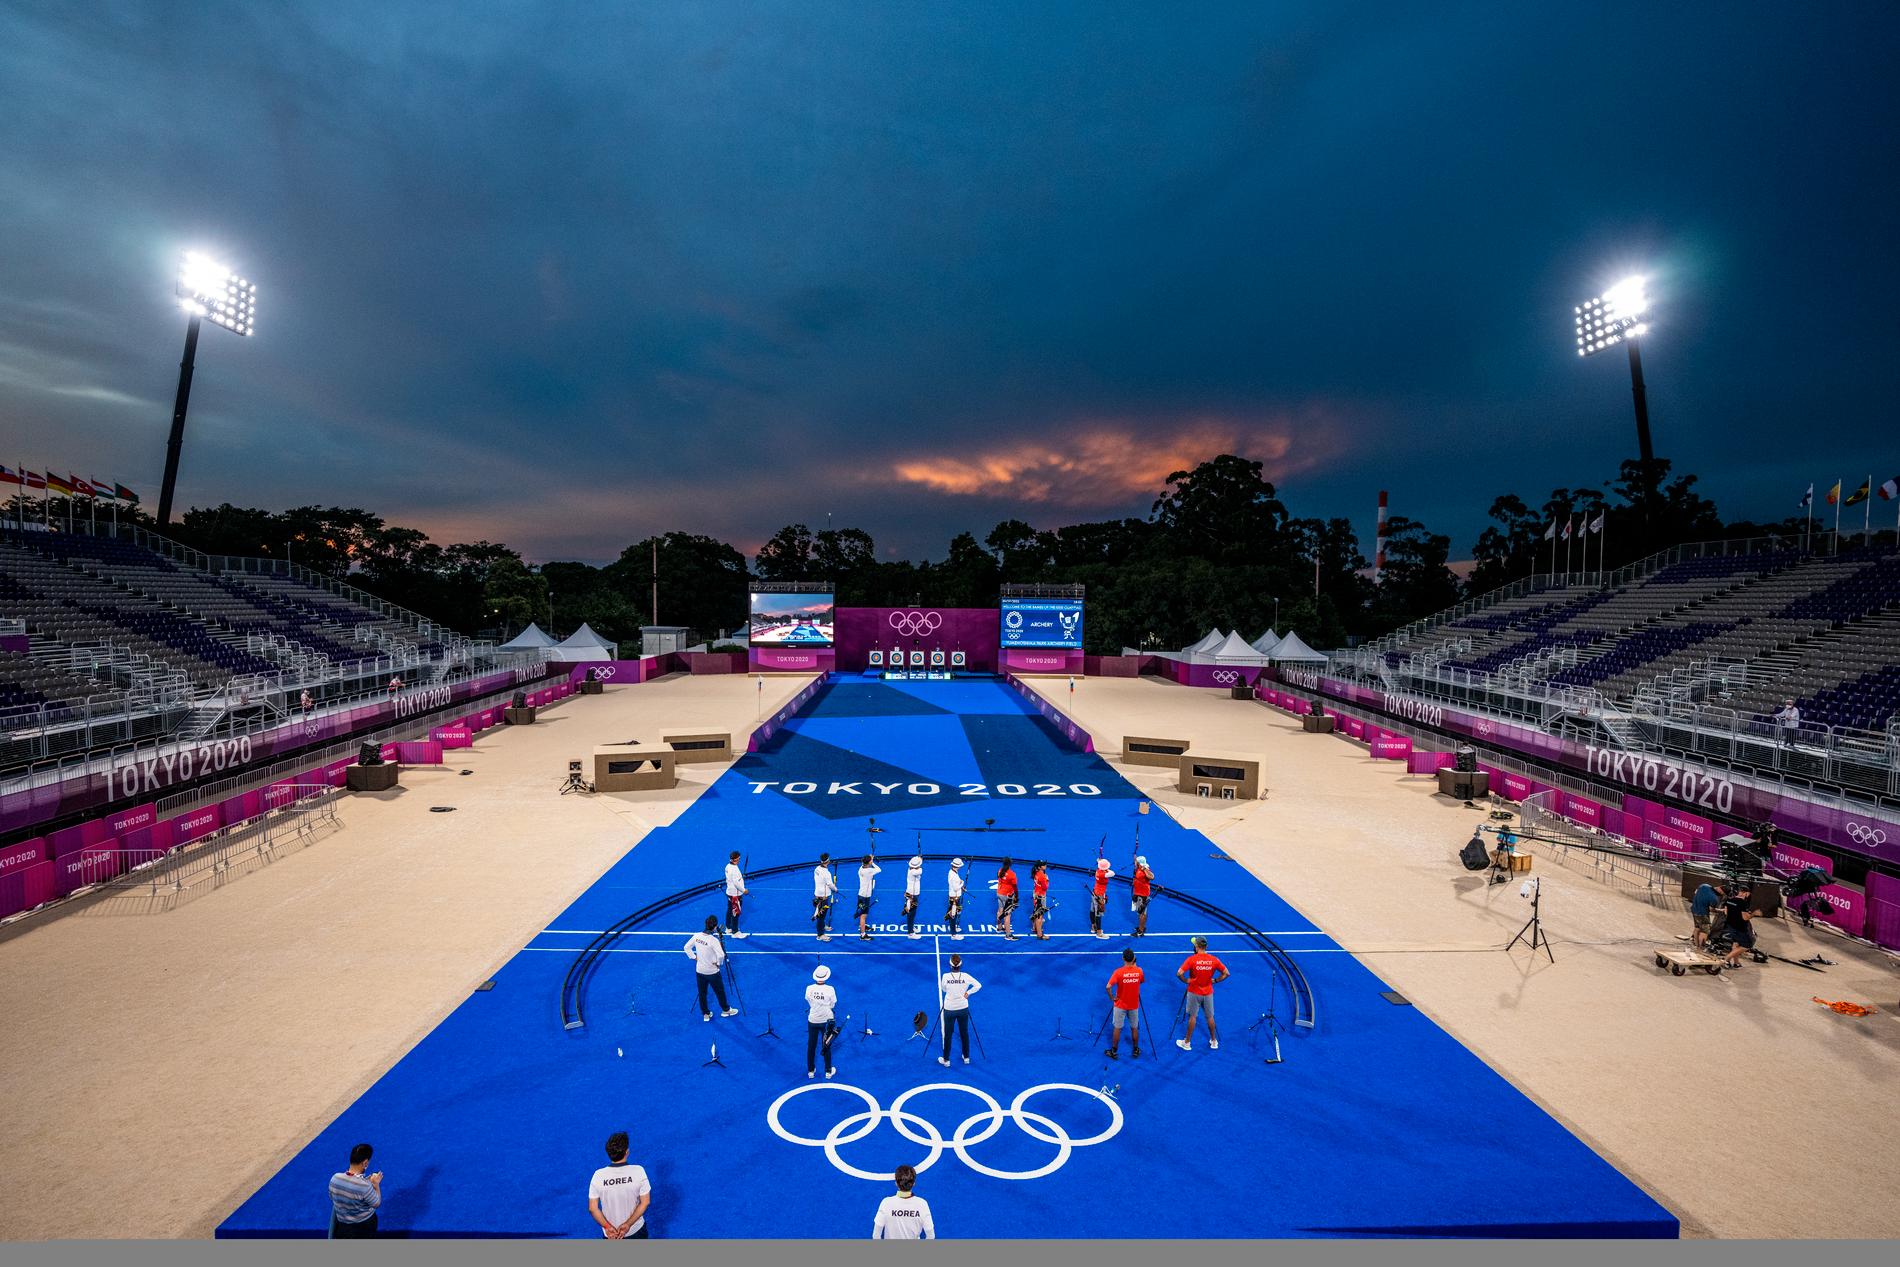 Sydkorea har låtit bygga en kopia av OS-arenan med identiska färger, tavlor, plattformar, kamerapositioner så att de aktiva vänjer sig vid vad som komma skall.